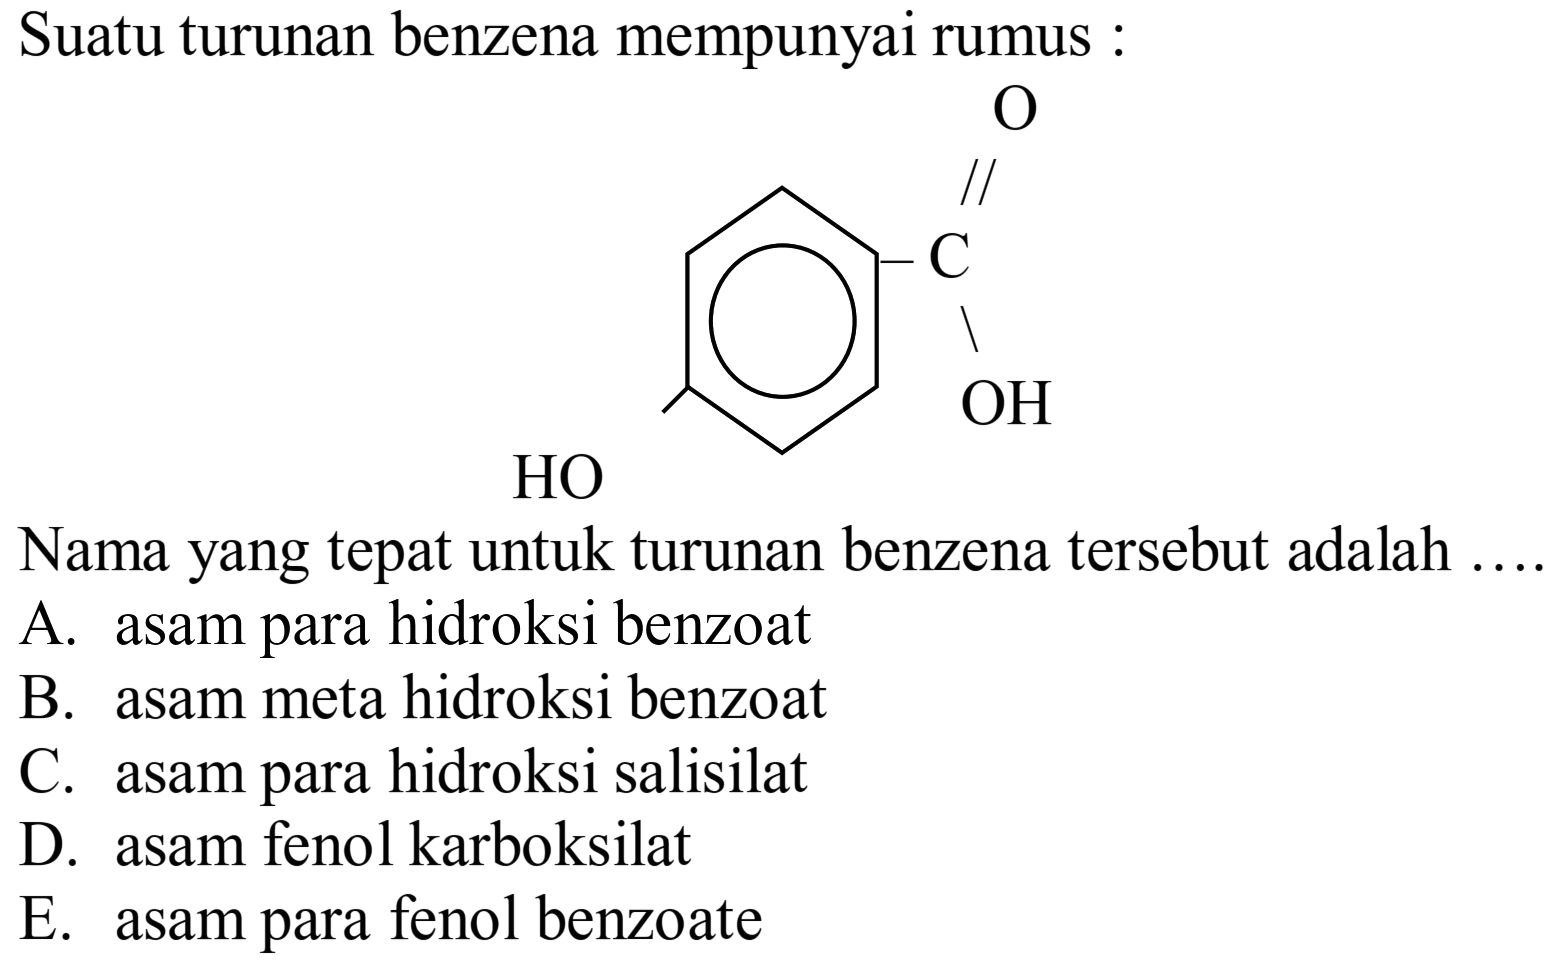 Suatu turunan benzena mempunyai rumus :
O=C(O)c1ccc(O)cc1
Nama yang tepat untuk turunan benzena tersebut adalah ....
A. asam para hidroksi benzoat
B. asam meta hidroksi benzoat
C. asam para hidroksi salisilat
D. asam fenol karboksilat
E. asam para fenol benzoate